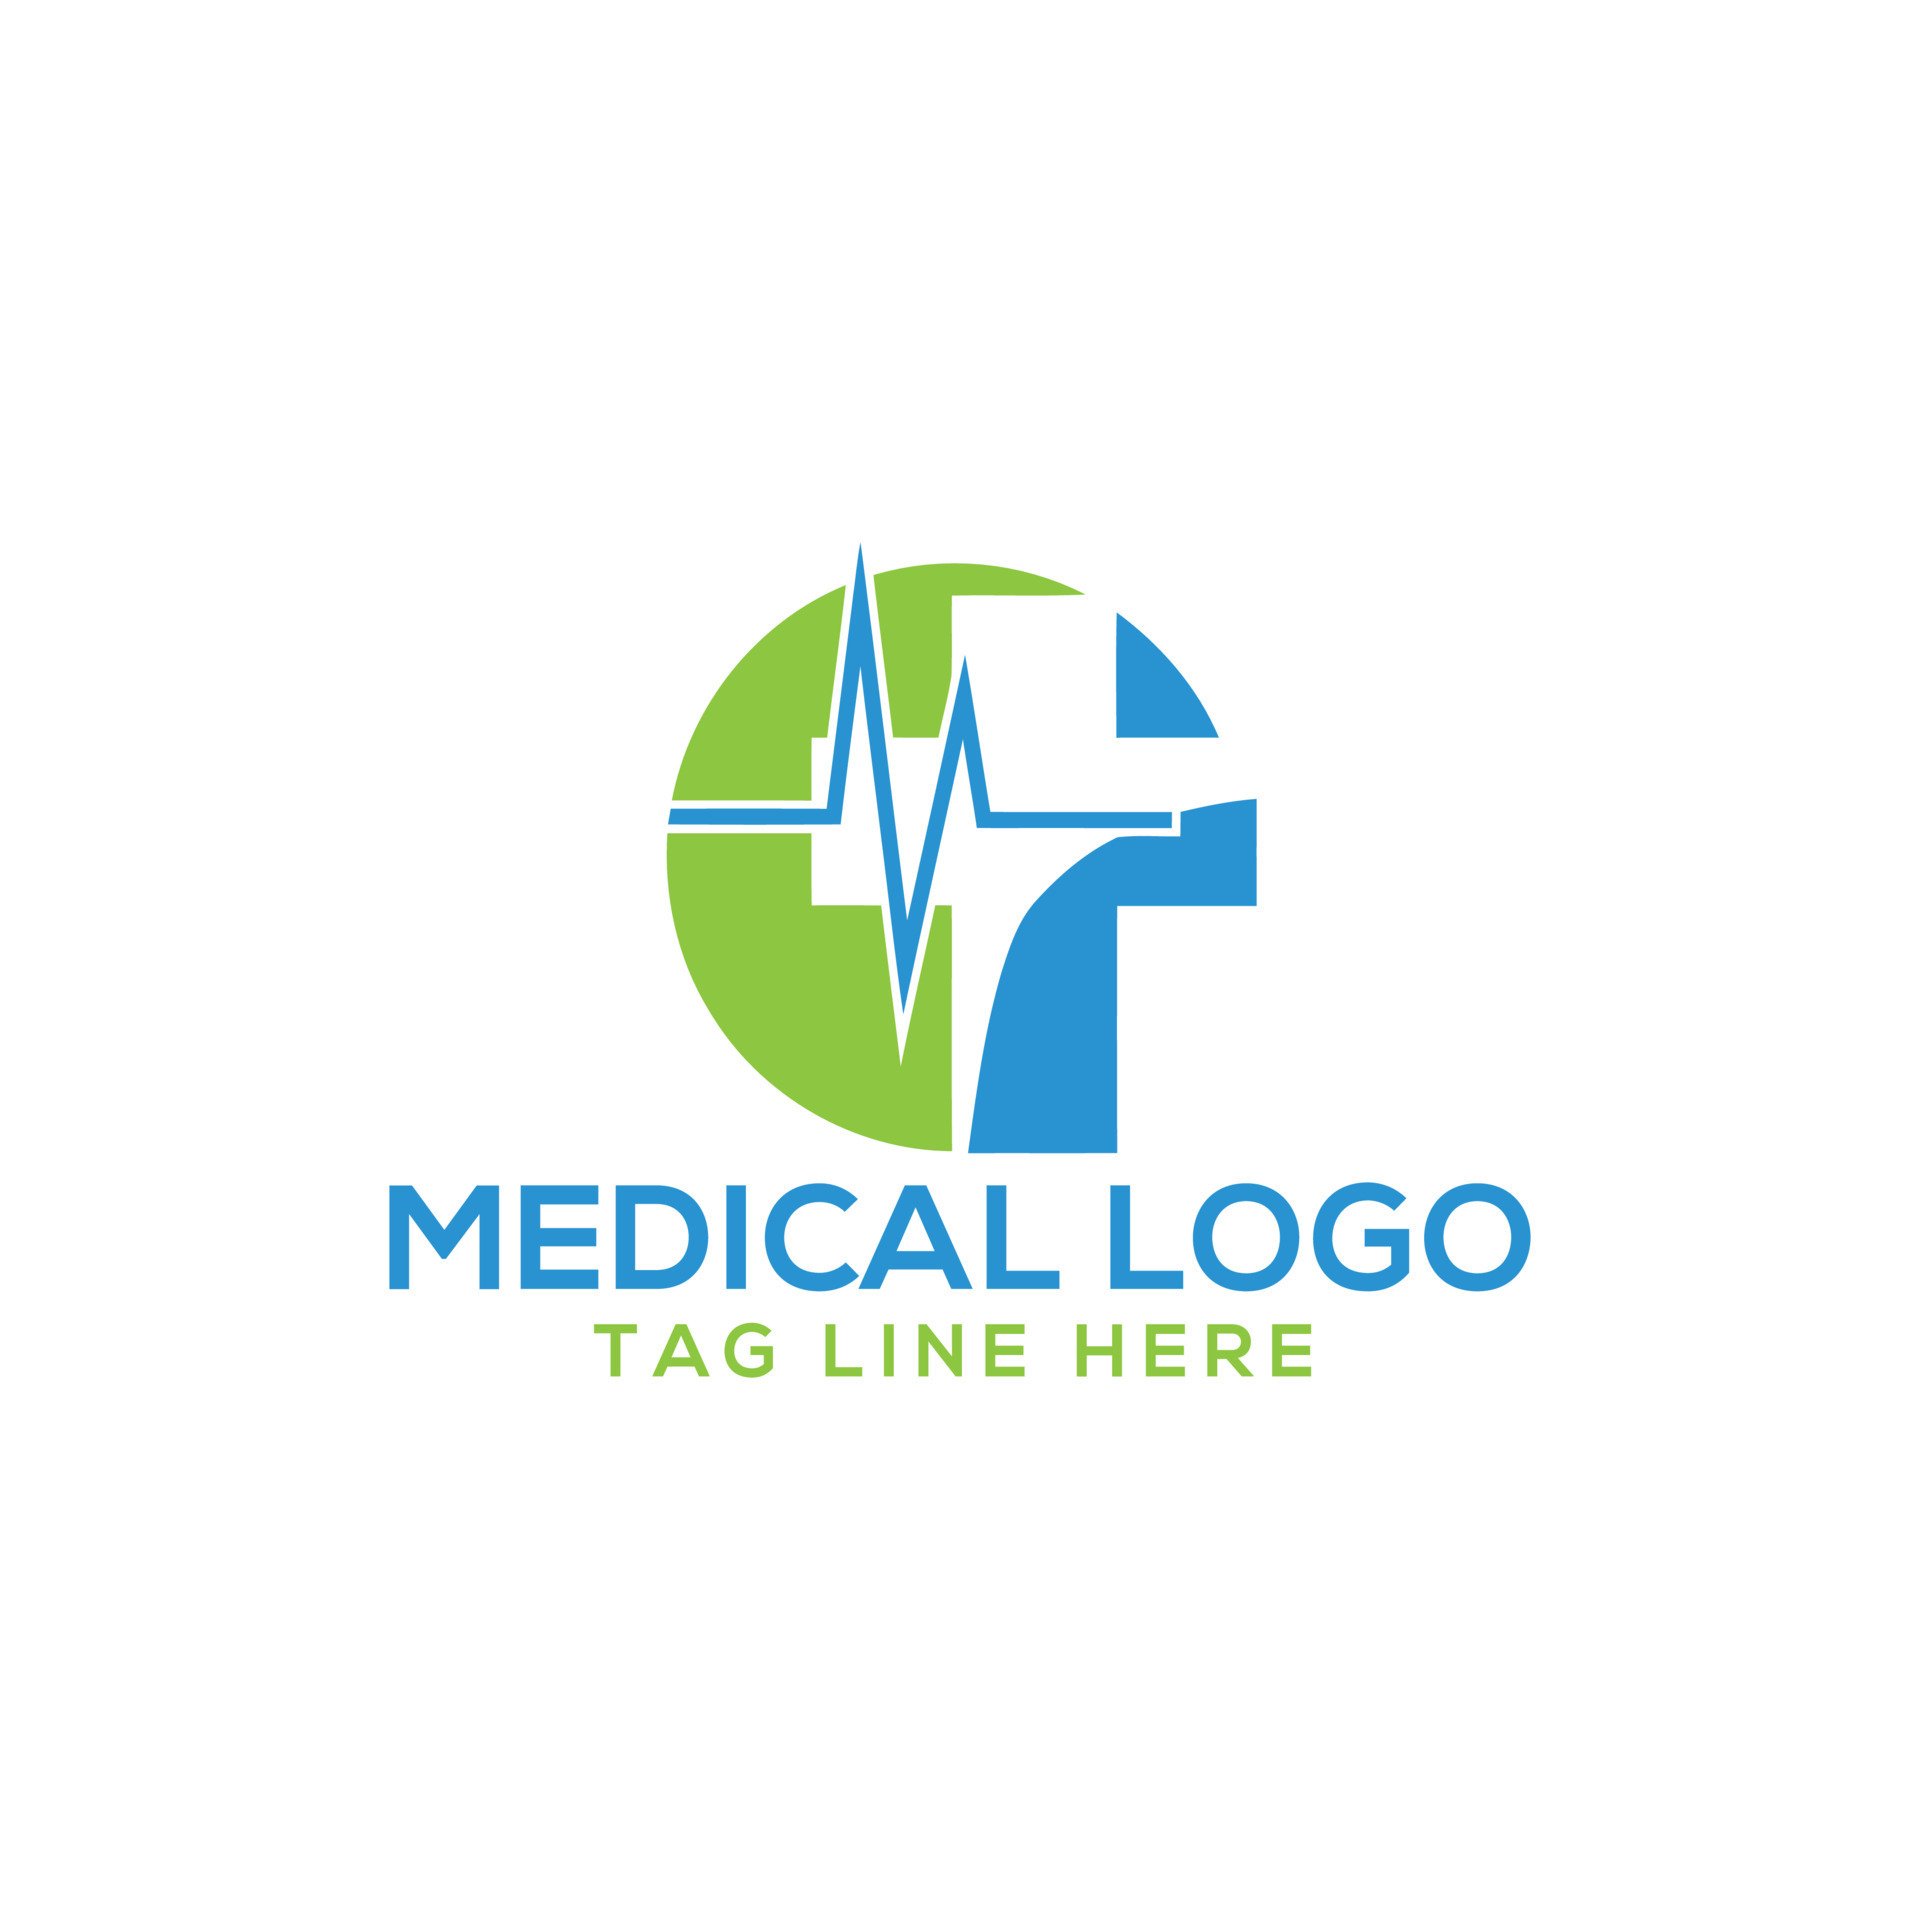 https://static.vecteezy.com/system/resources/previews/024/265/714/original/health-care-medical-logo-design-free-vector.jpg